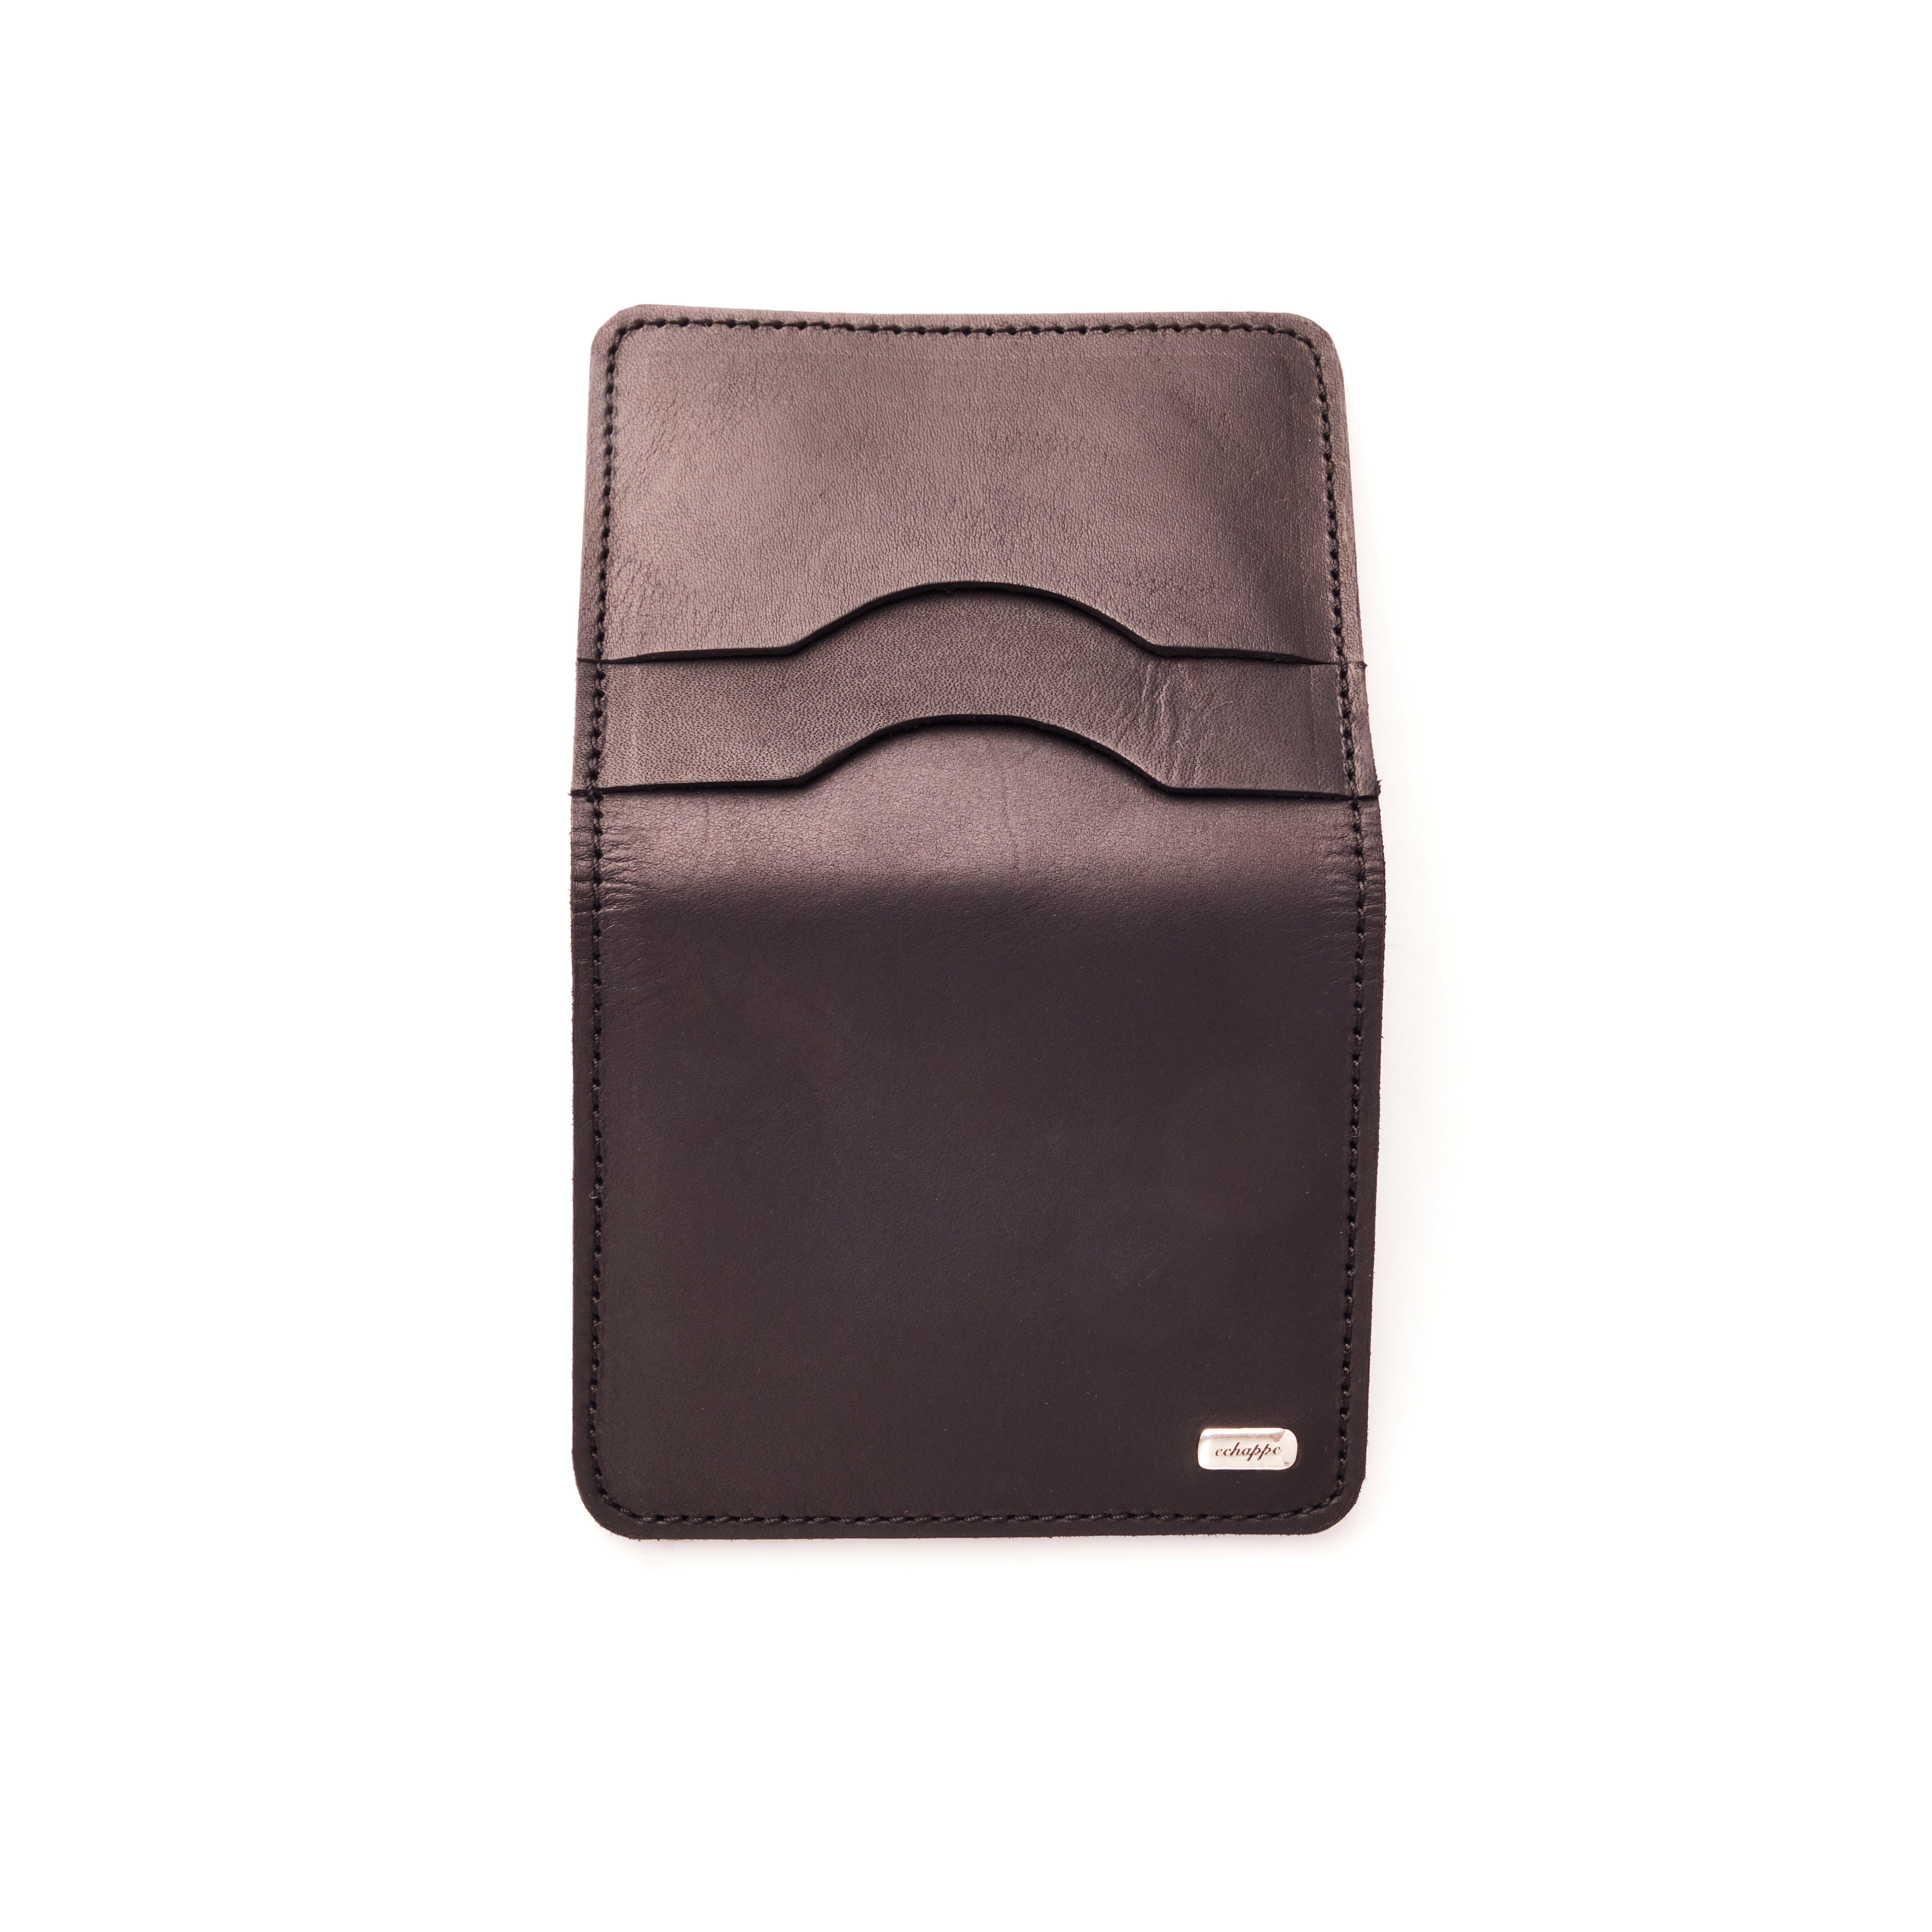 Patina Black - E2 Bifold Wallet